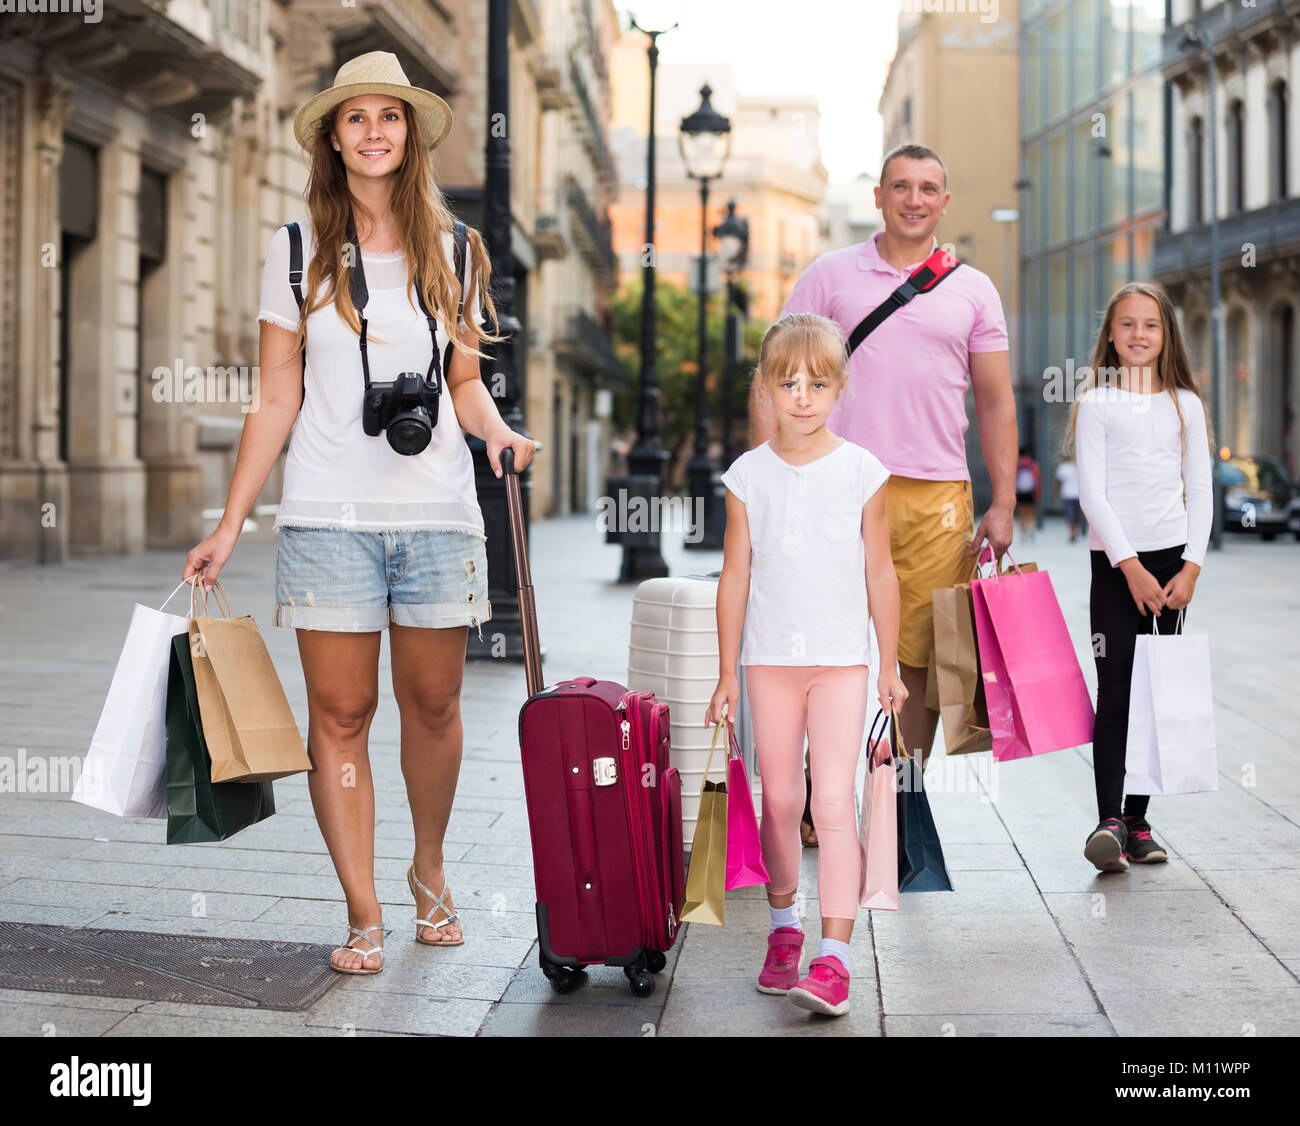 En toute sécurité avec une assurance voyage suisse famille de quatre personnes se promener avec assurance le long de la rue de la ville européenne Banque D'Images